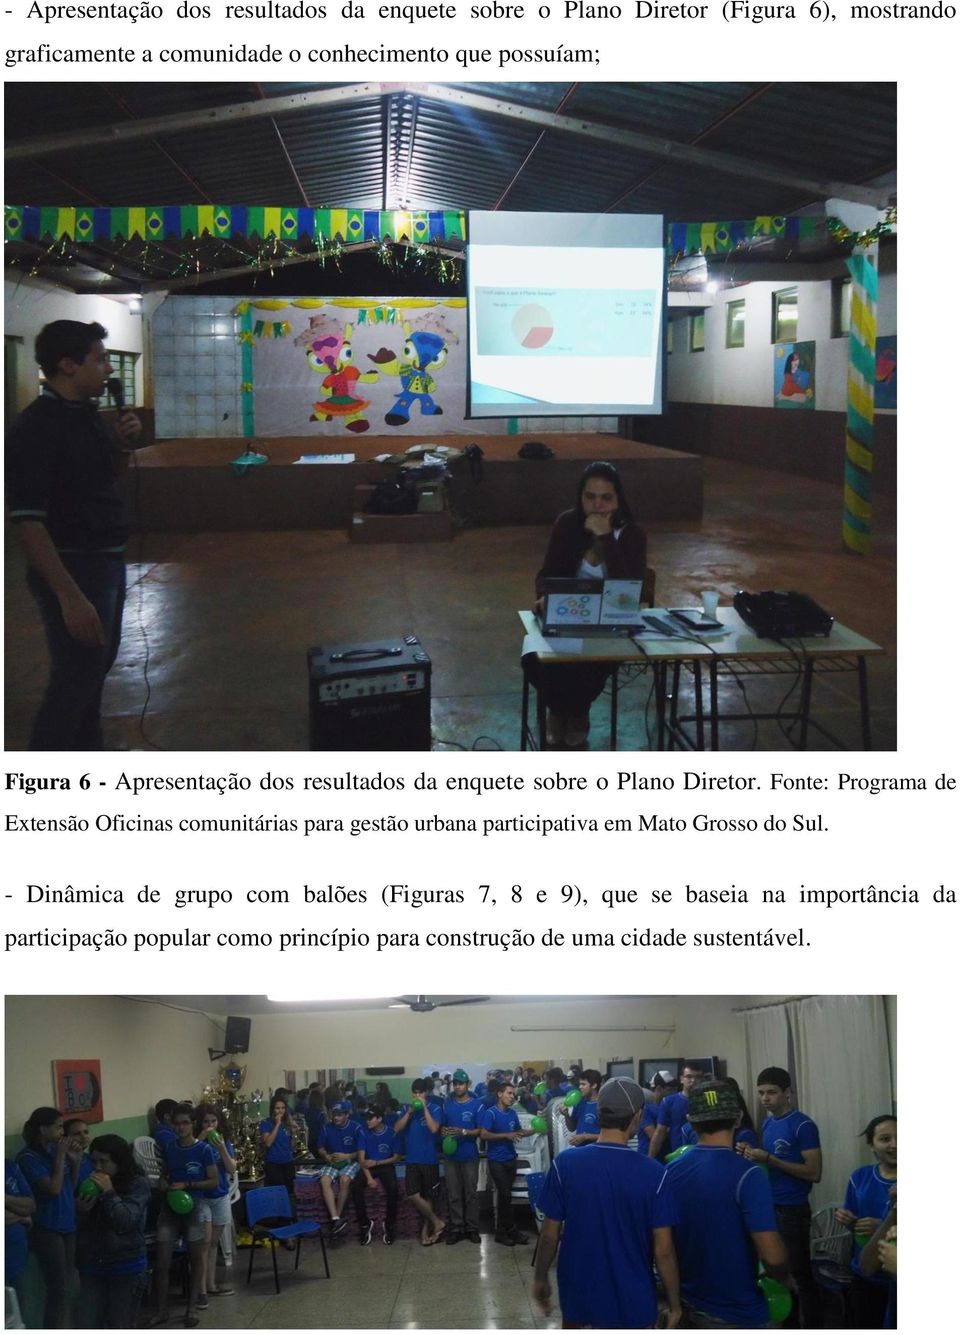 Fonte: Programa de Extensão Oficinas comunitárias para gestão urbana participativa em Mato Grosso do Sul.